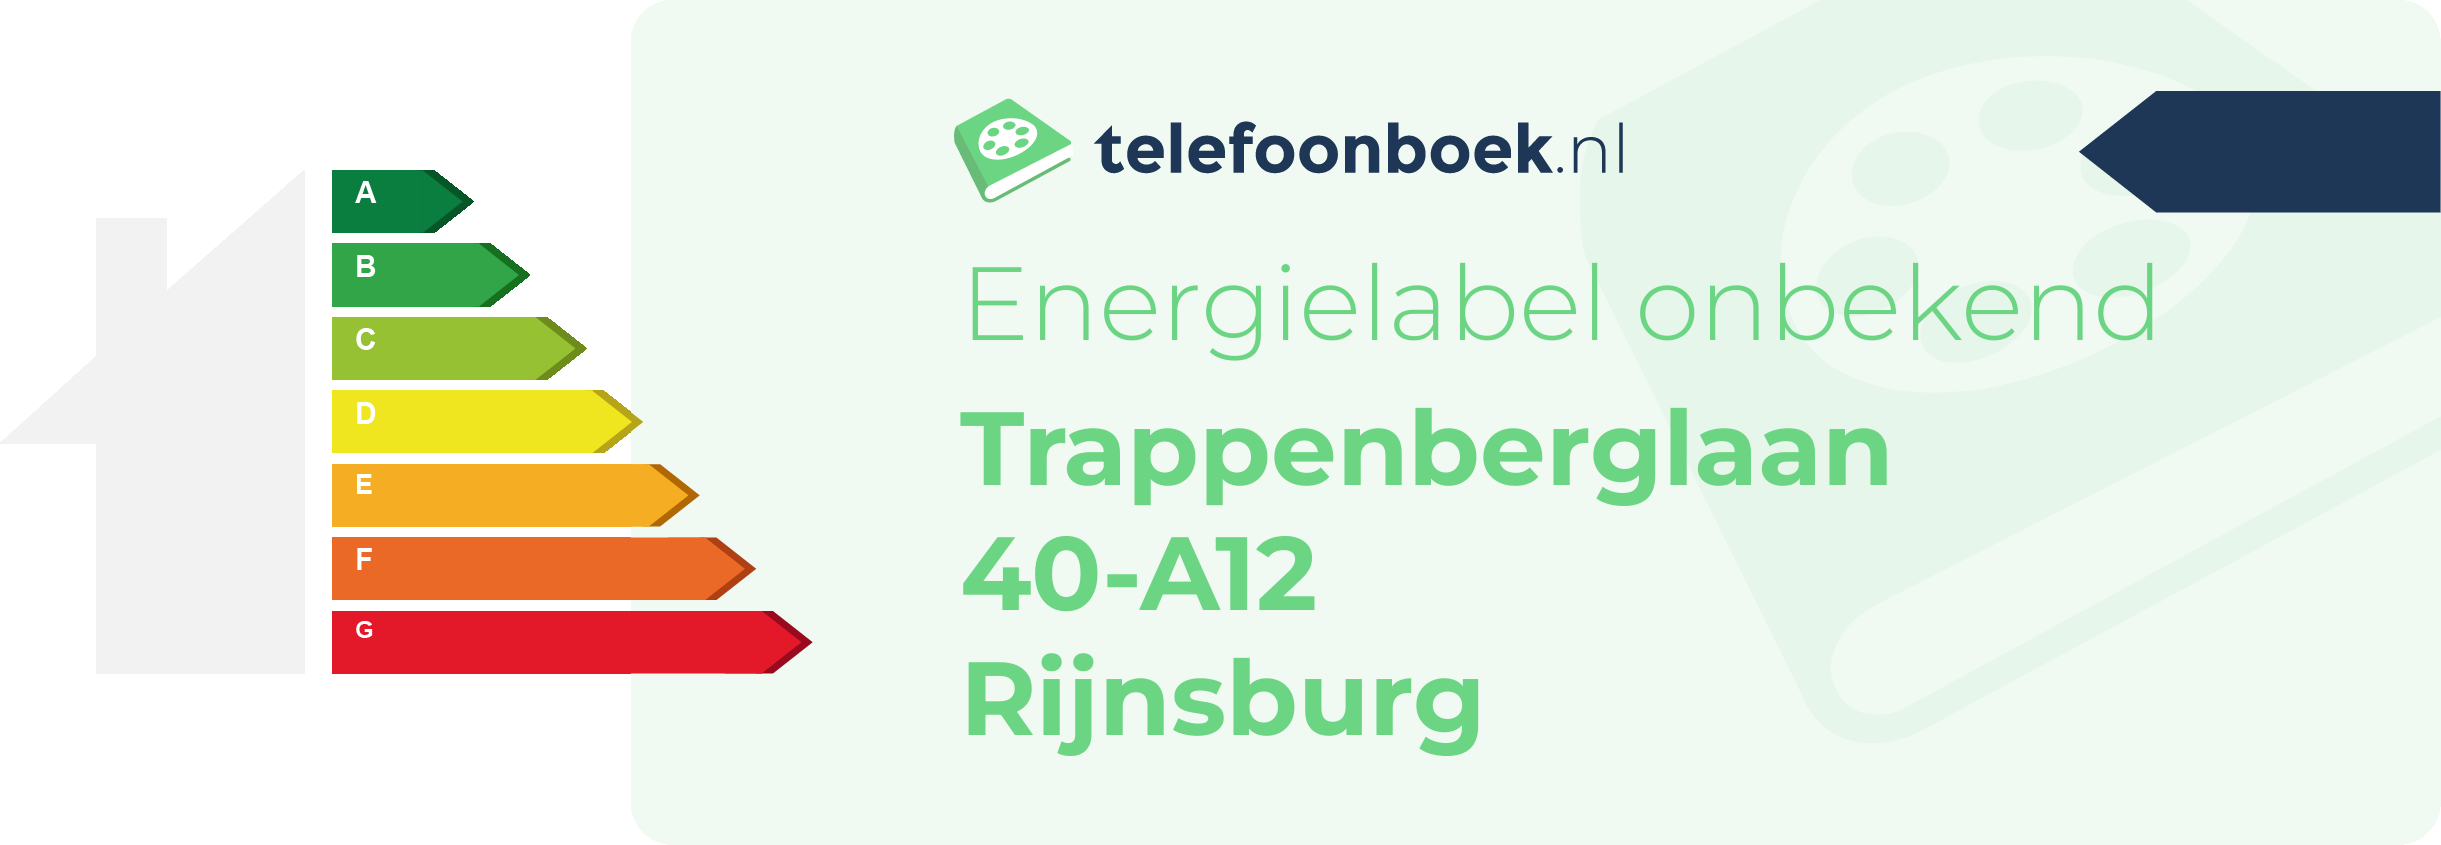 Energielabel Trappenberglaan 40-A12 Rijnsburg